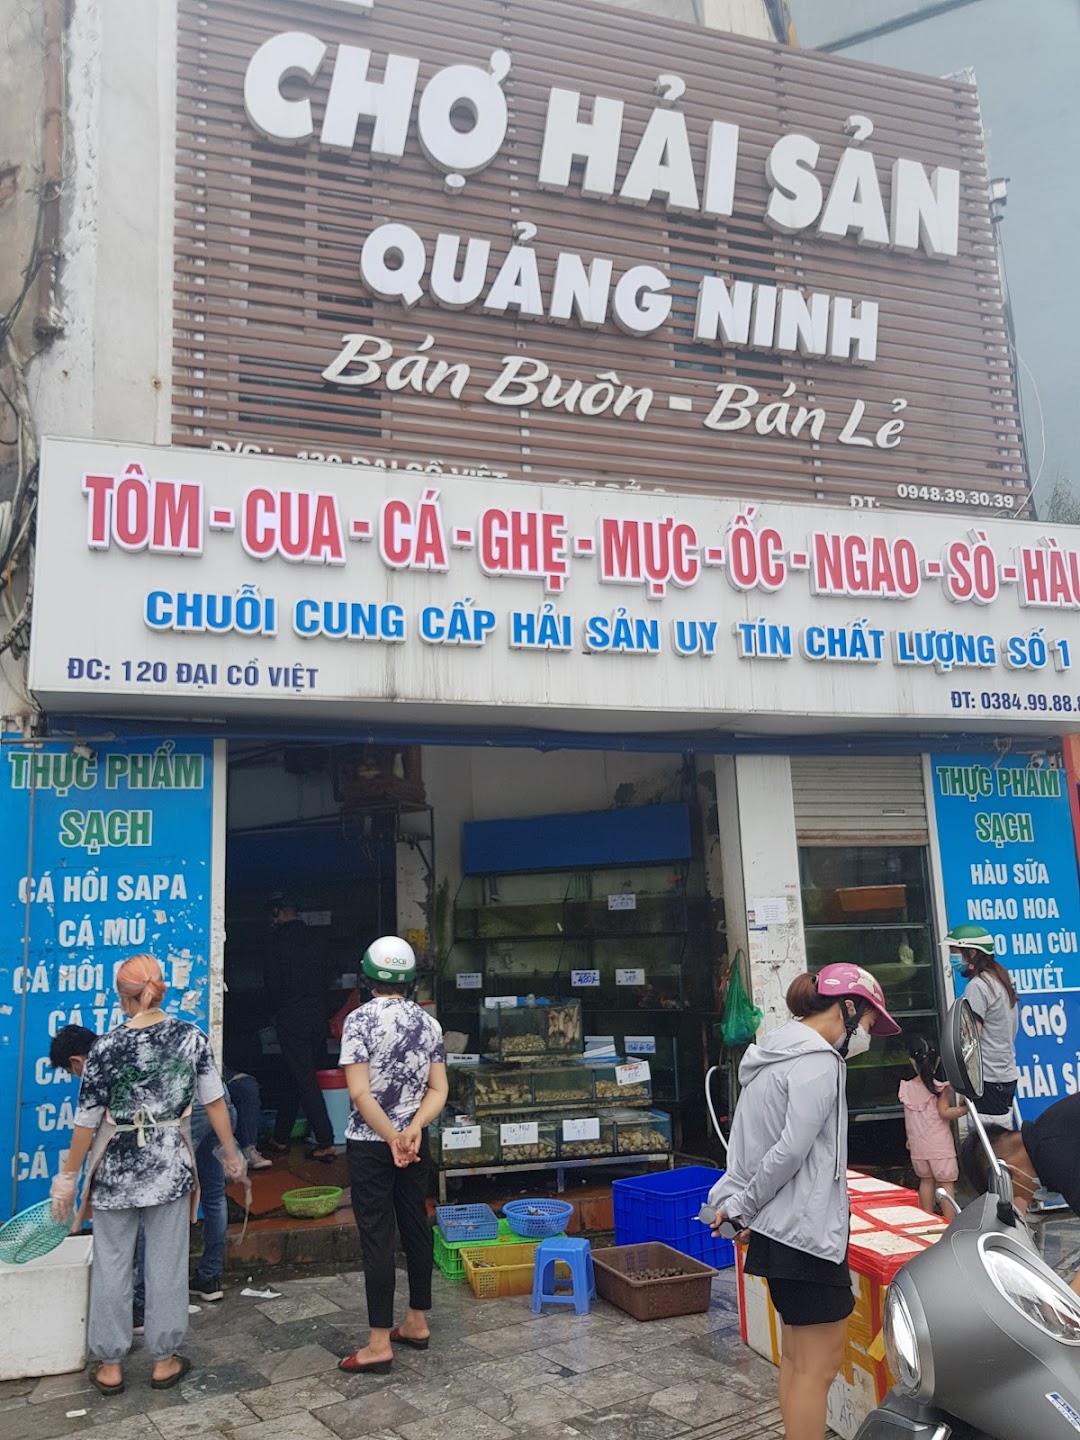 Chợ Hải Sản Quảng Ninh